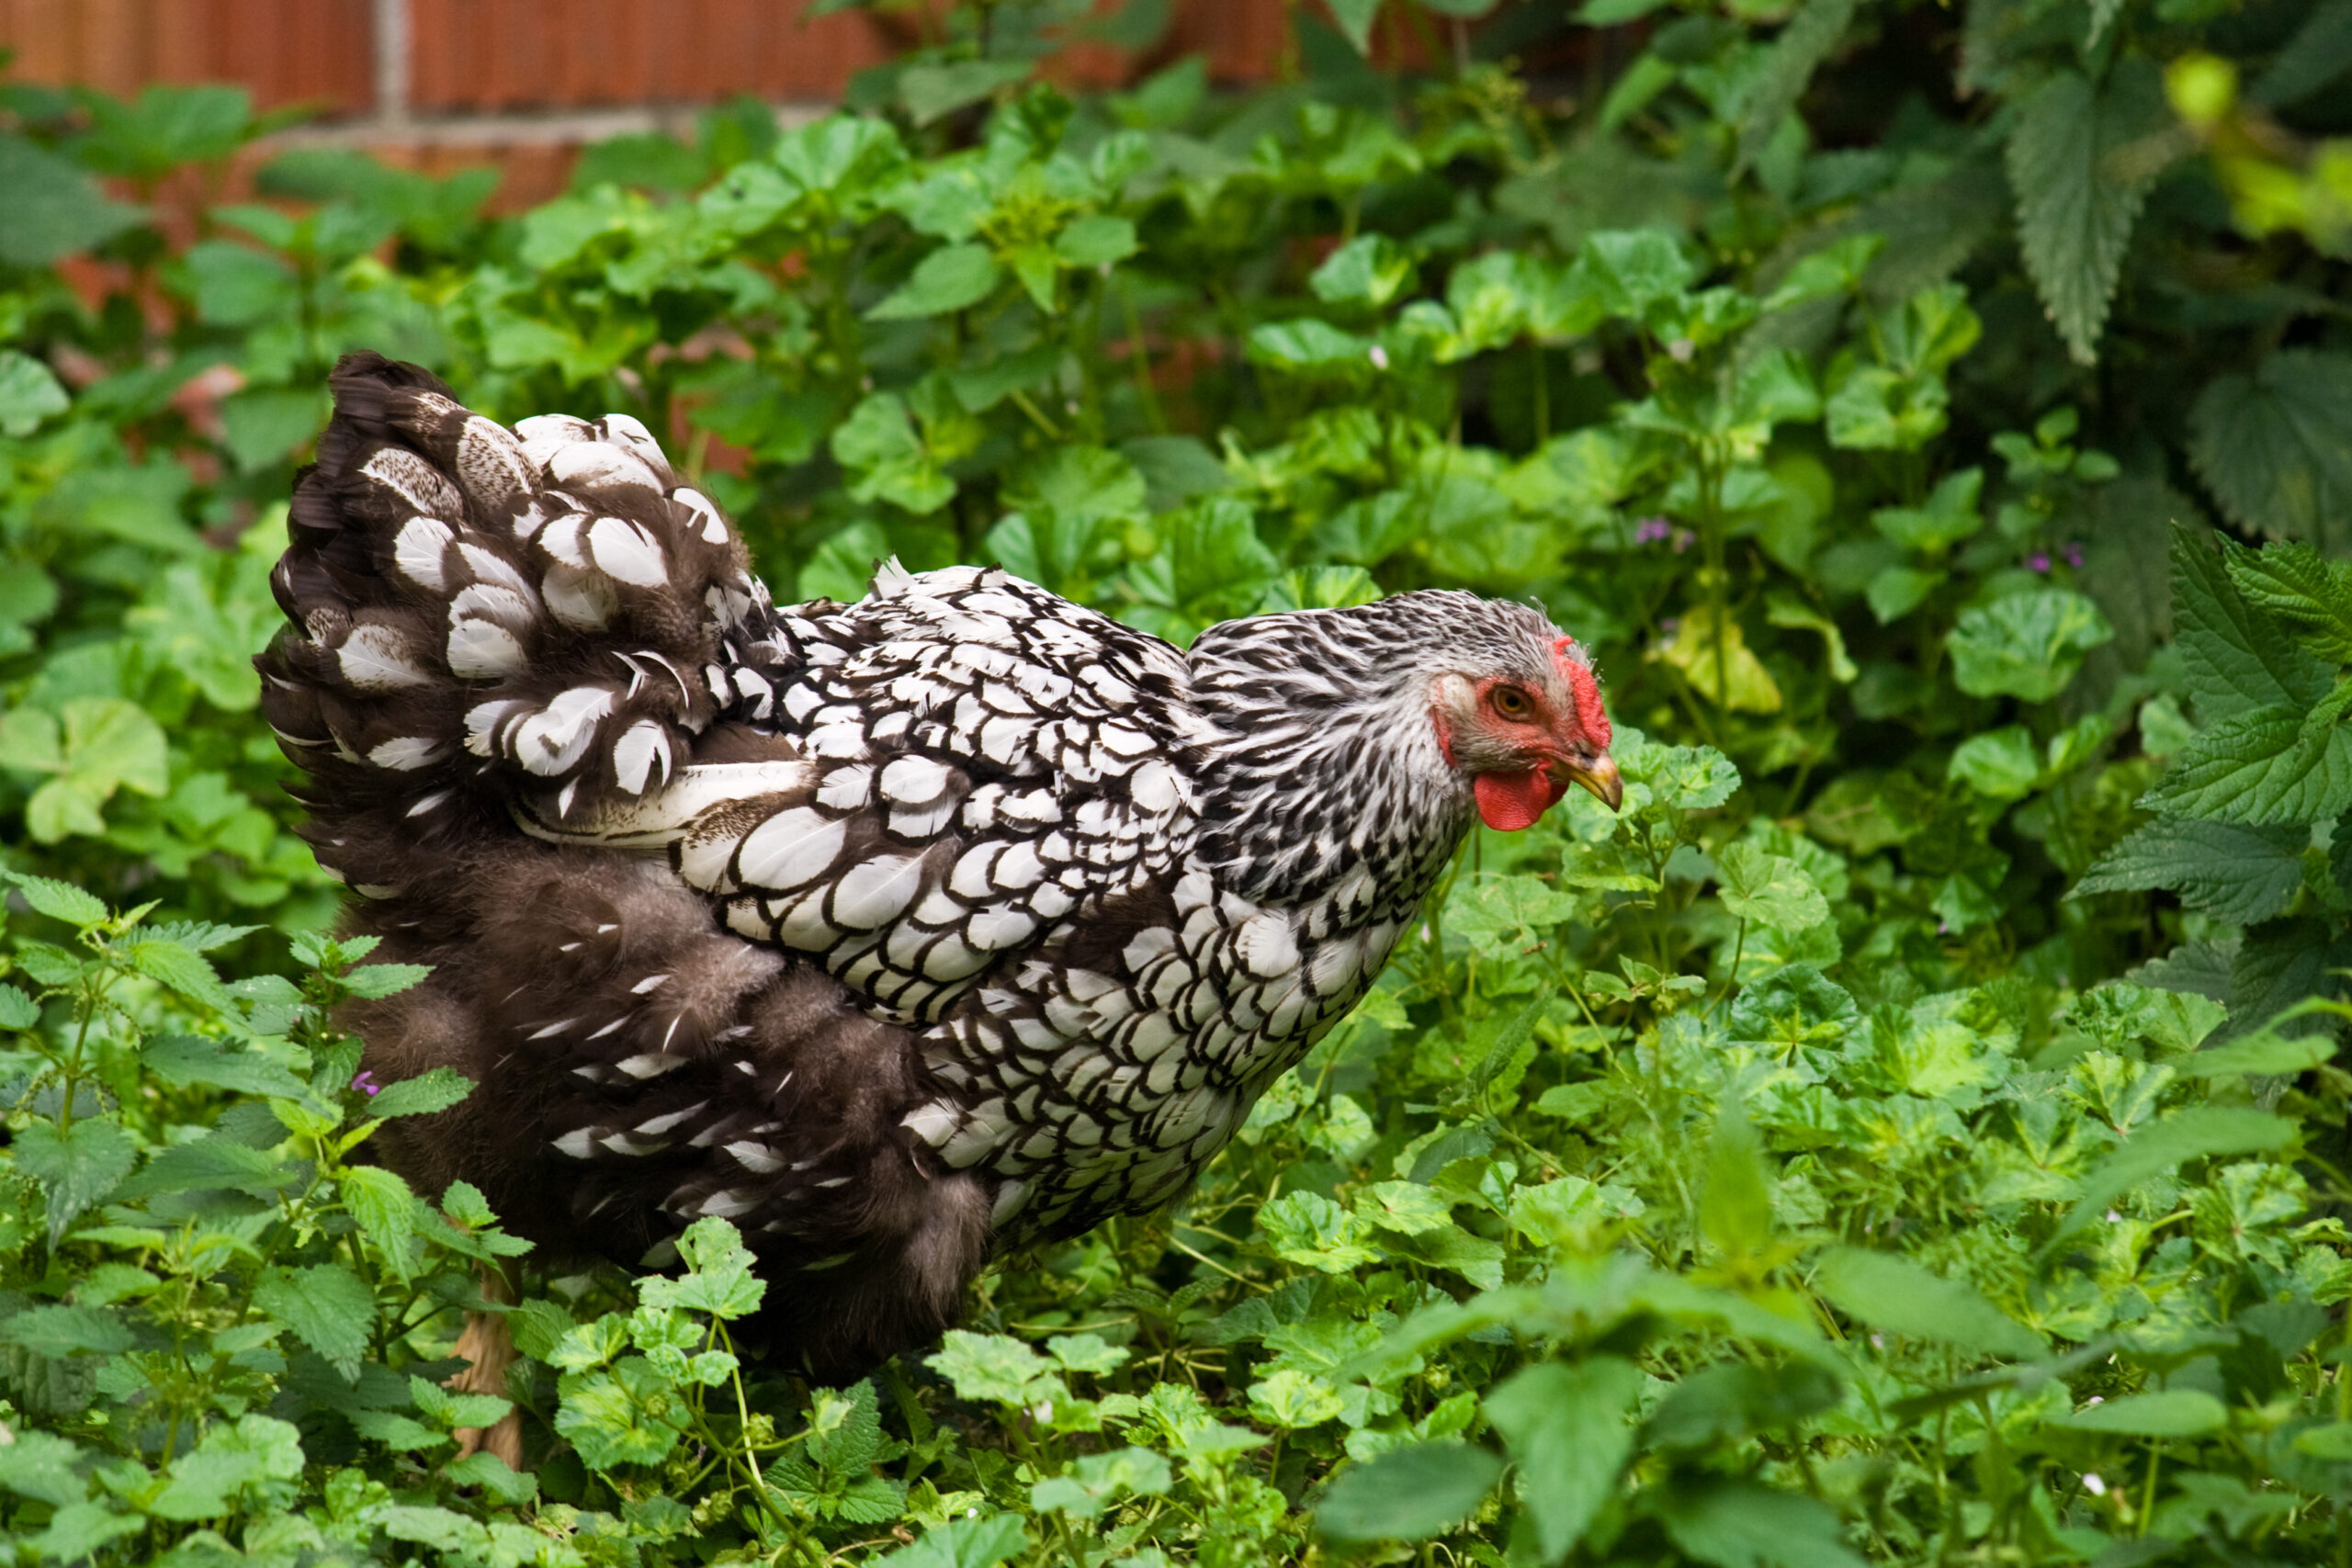 Wyandotte chicken in the garden.